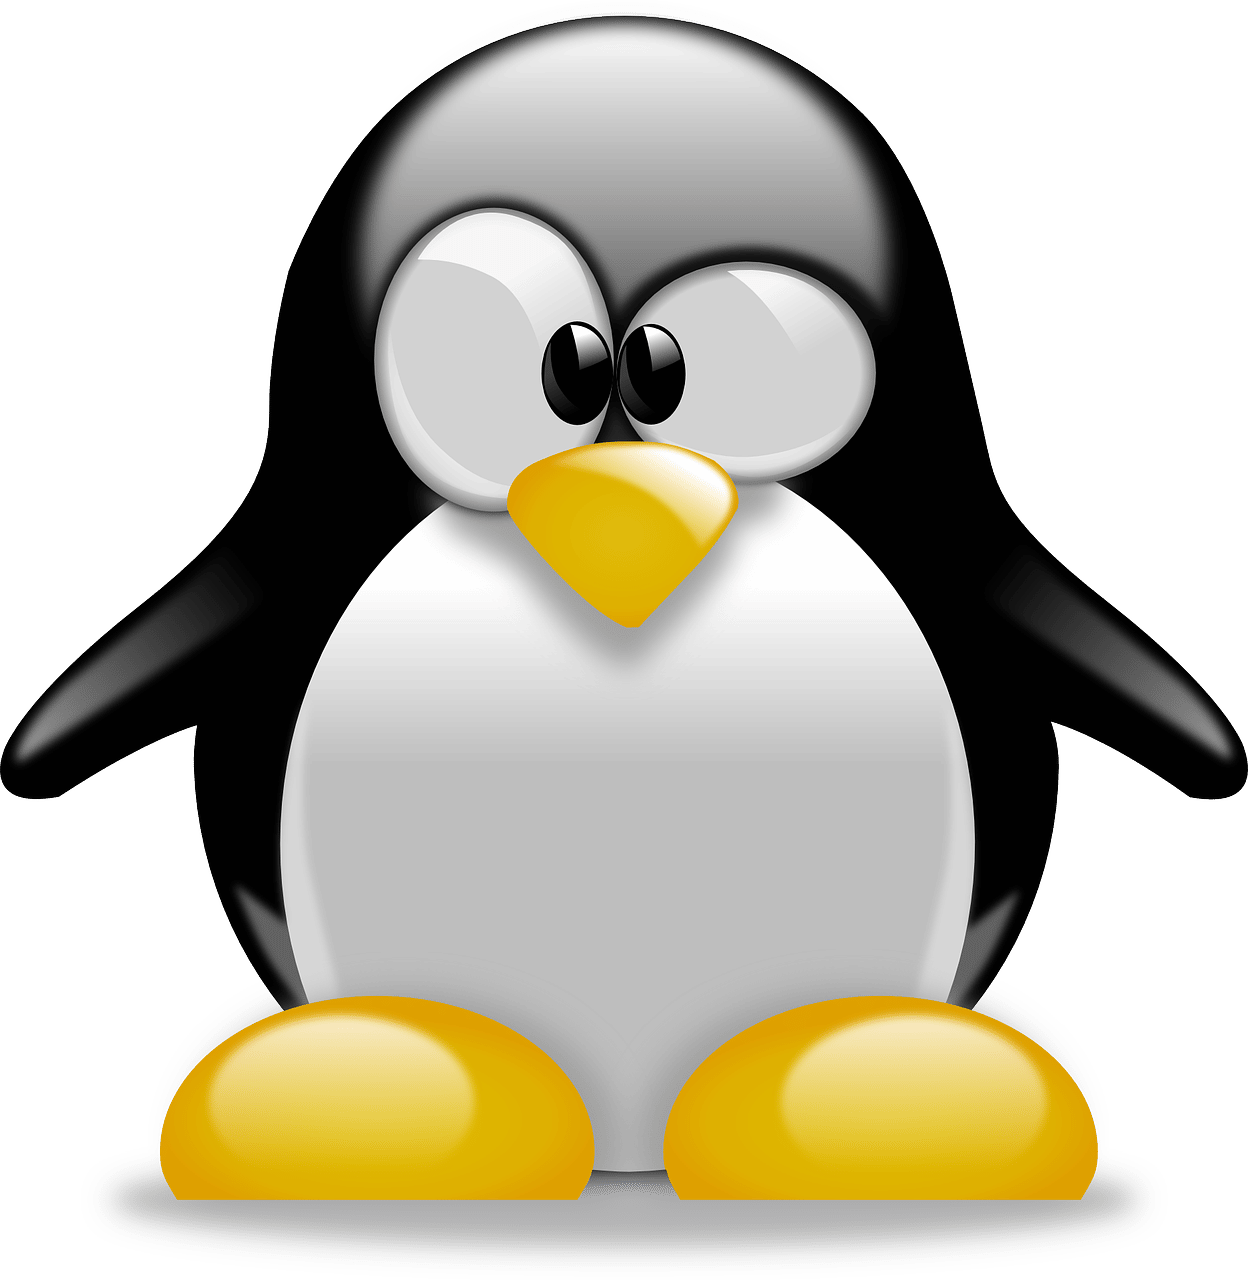 Nouvelles fonctionnalités dans Linux Mint 20.3